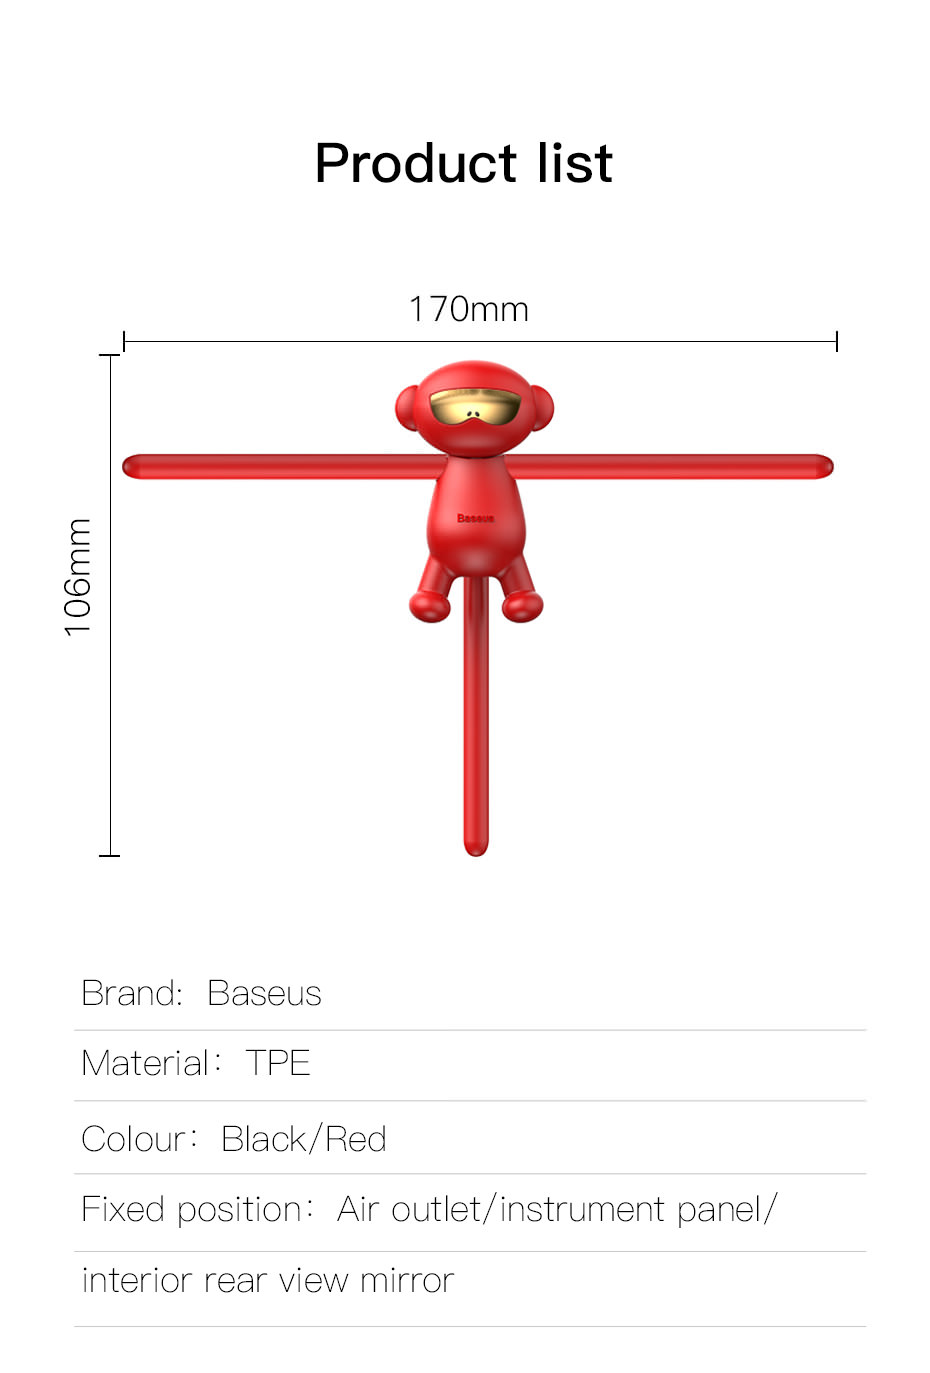 buy baseus monkey-shaped car mount holder